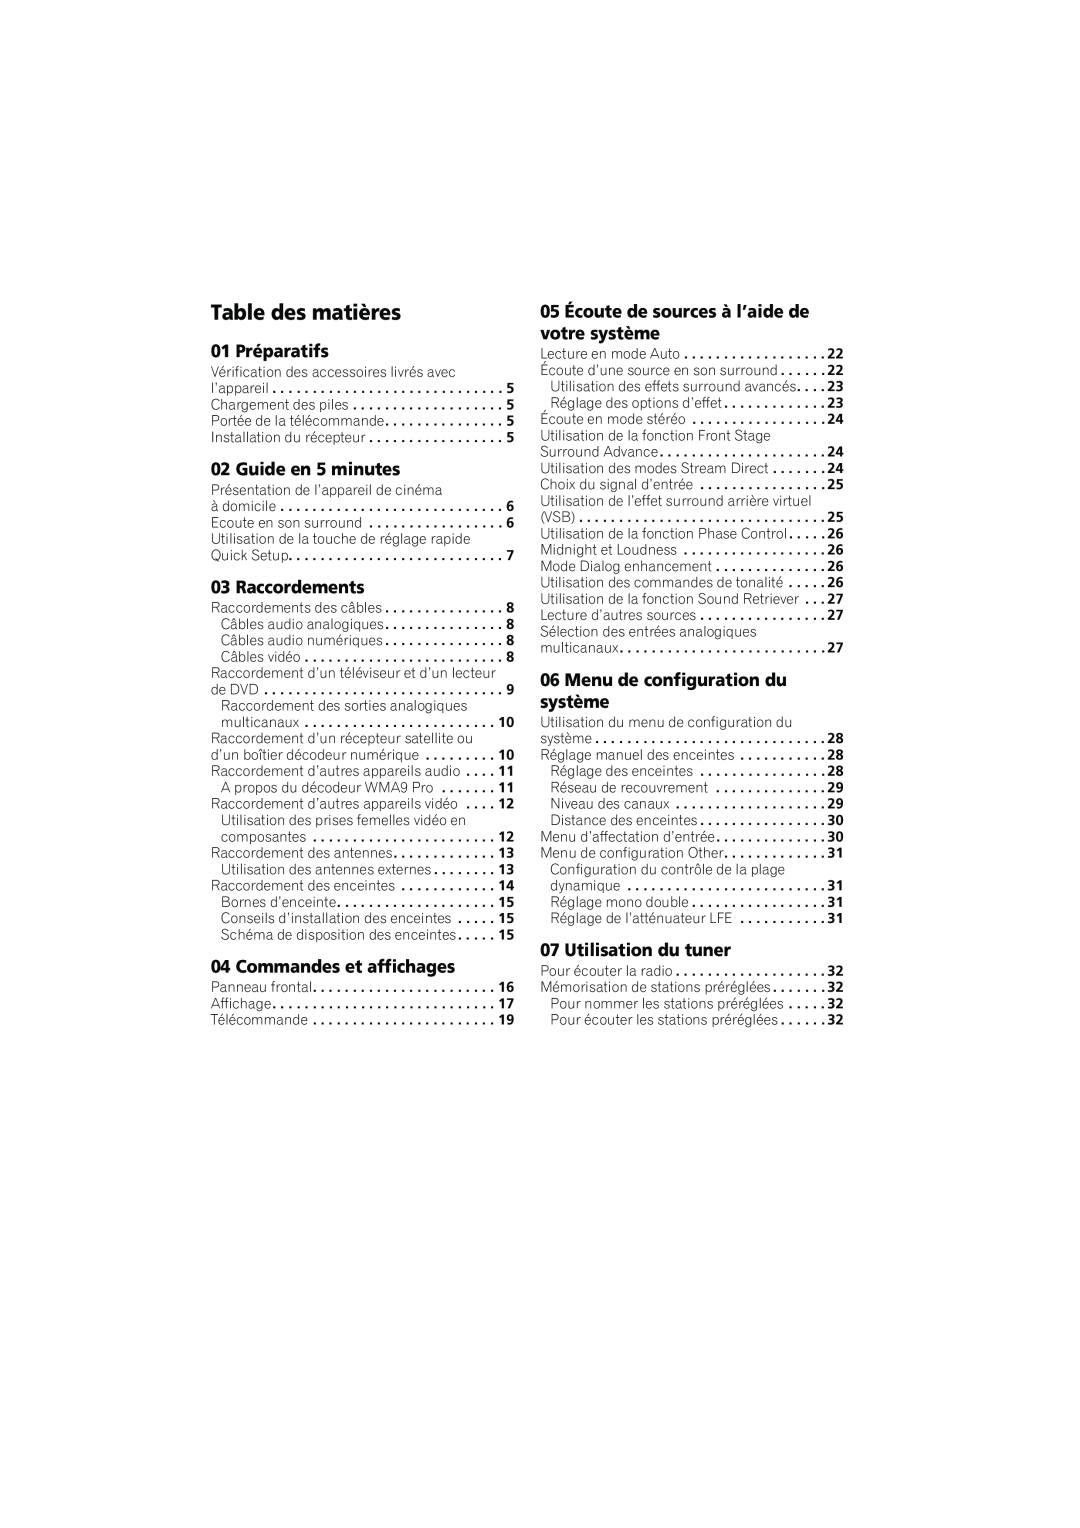 Pioneer XRE3138-A manual Table des matières, 01 Préparatifs, Guide en 5 minutes, Raccordements, Commandes et affichages 